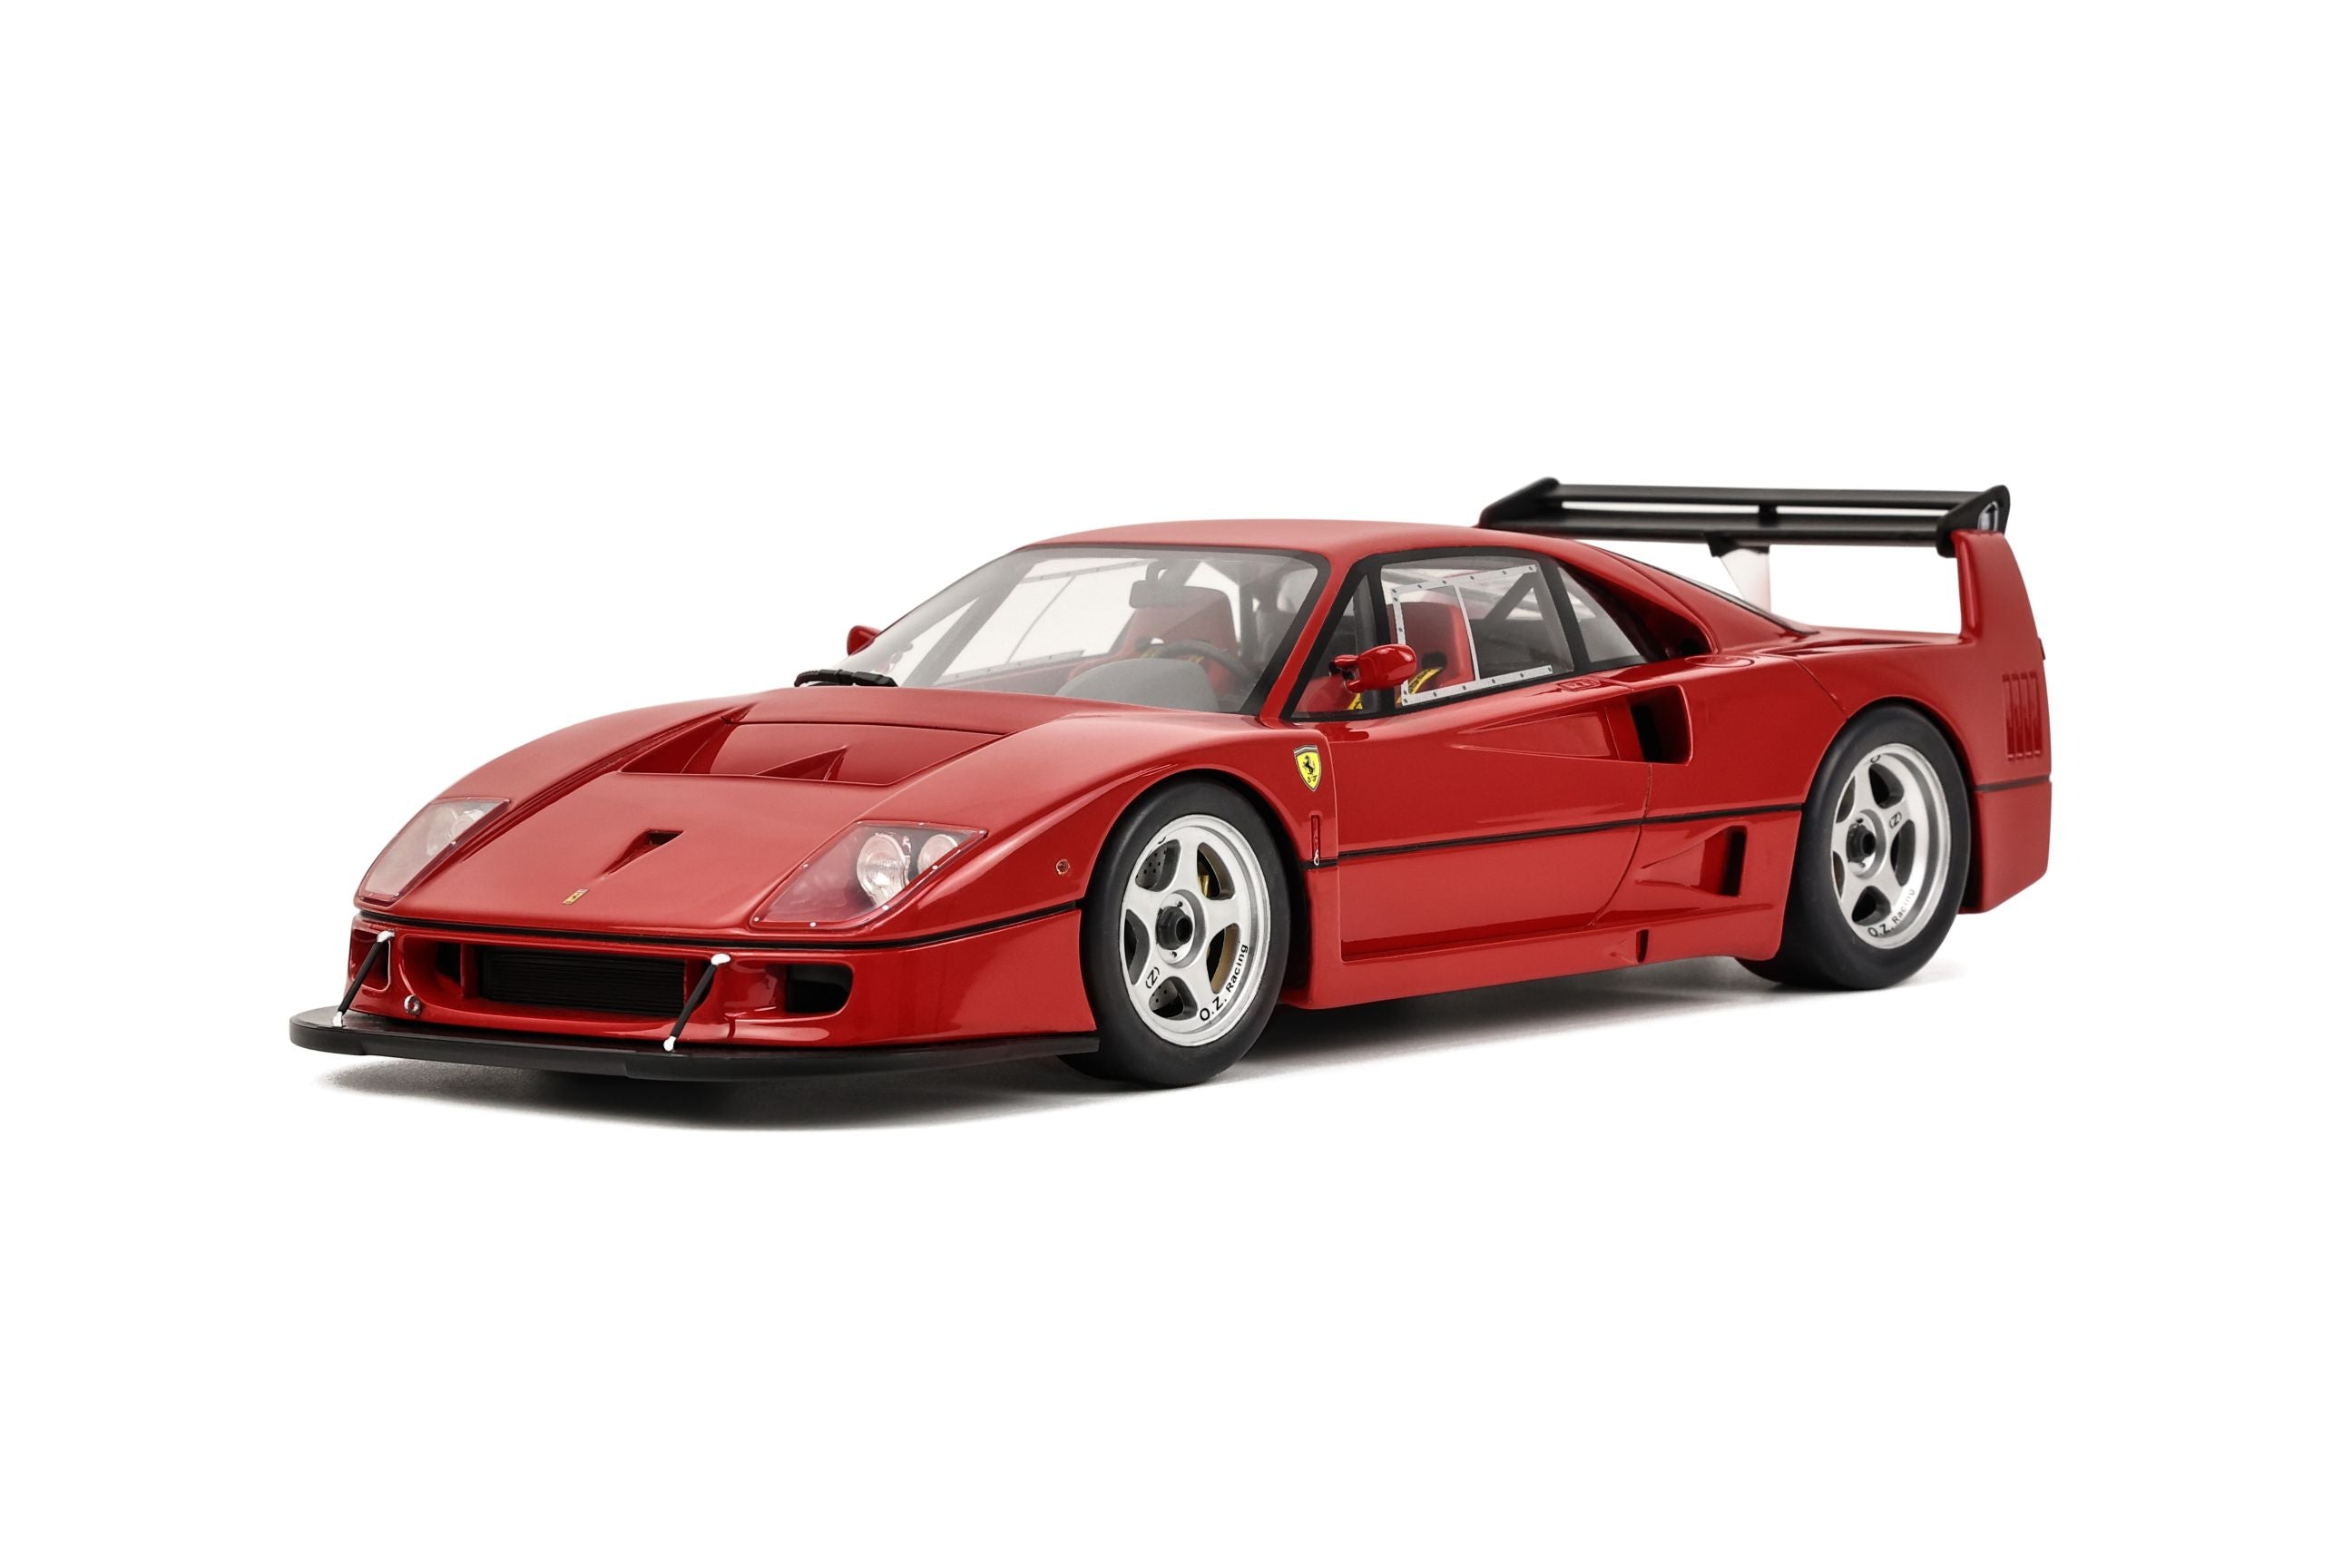 GT Spirit - Ferrari Ferrari F40 LM (Rosso Corsa Red) 1:18 Scale